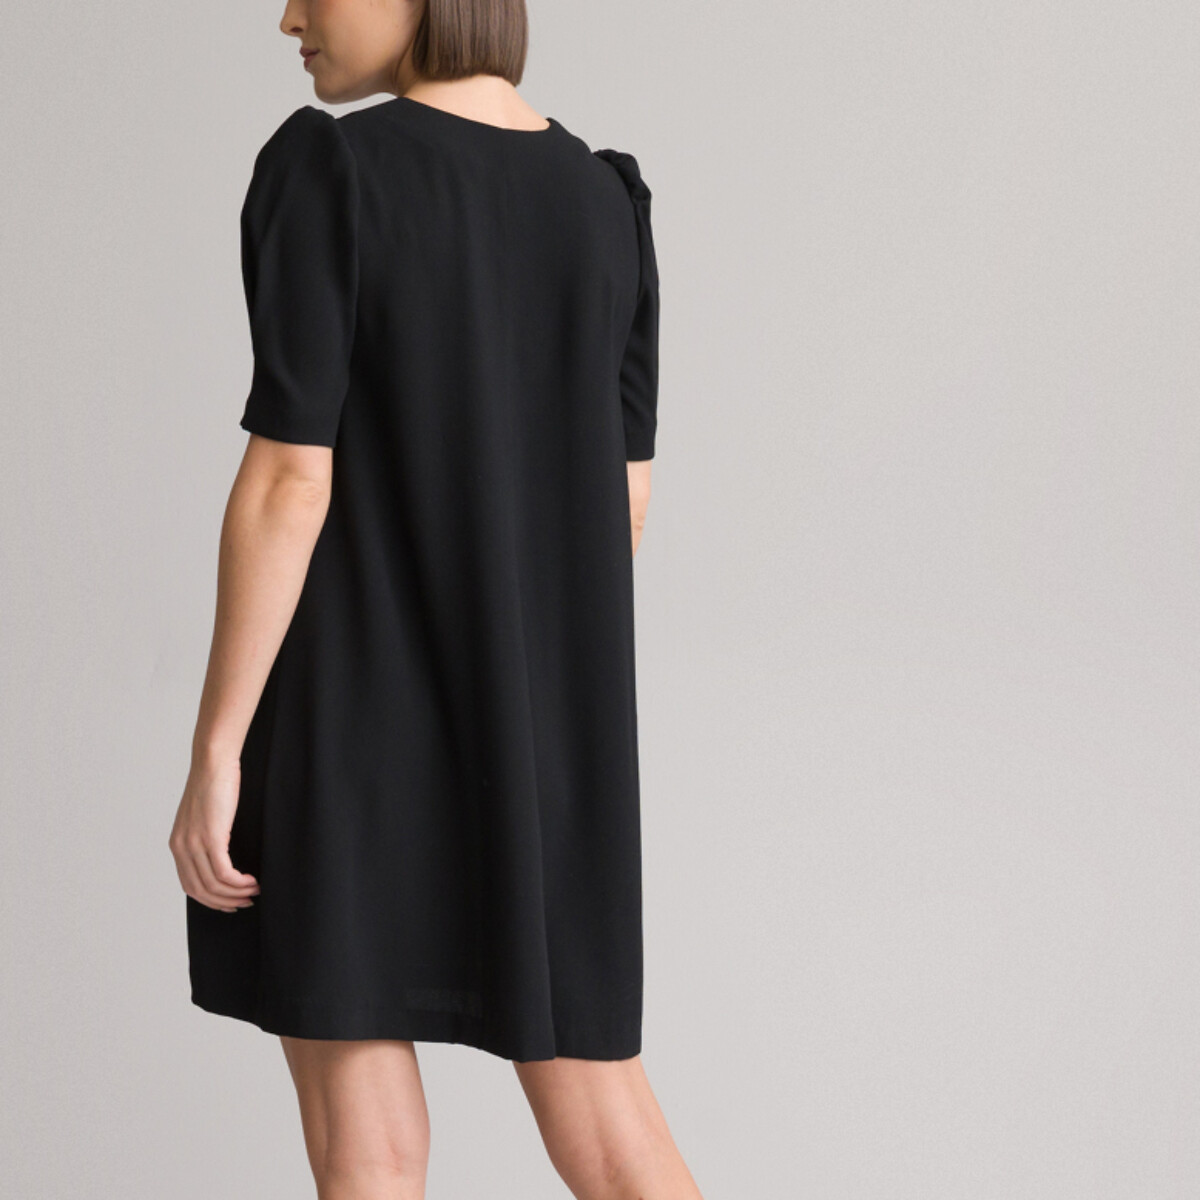 Платье Короткое с V-образным вырезом короткие рукава 56 черный LaRedoute, размер 56 - фото 4